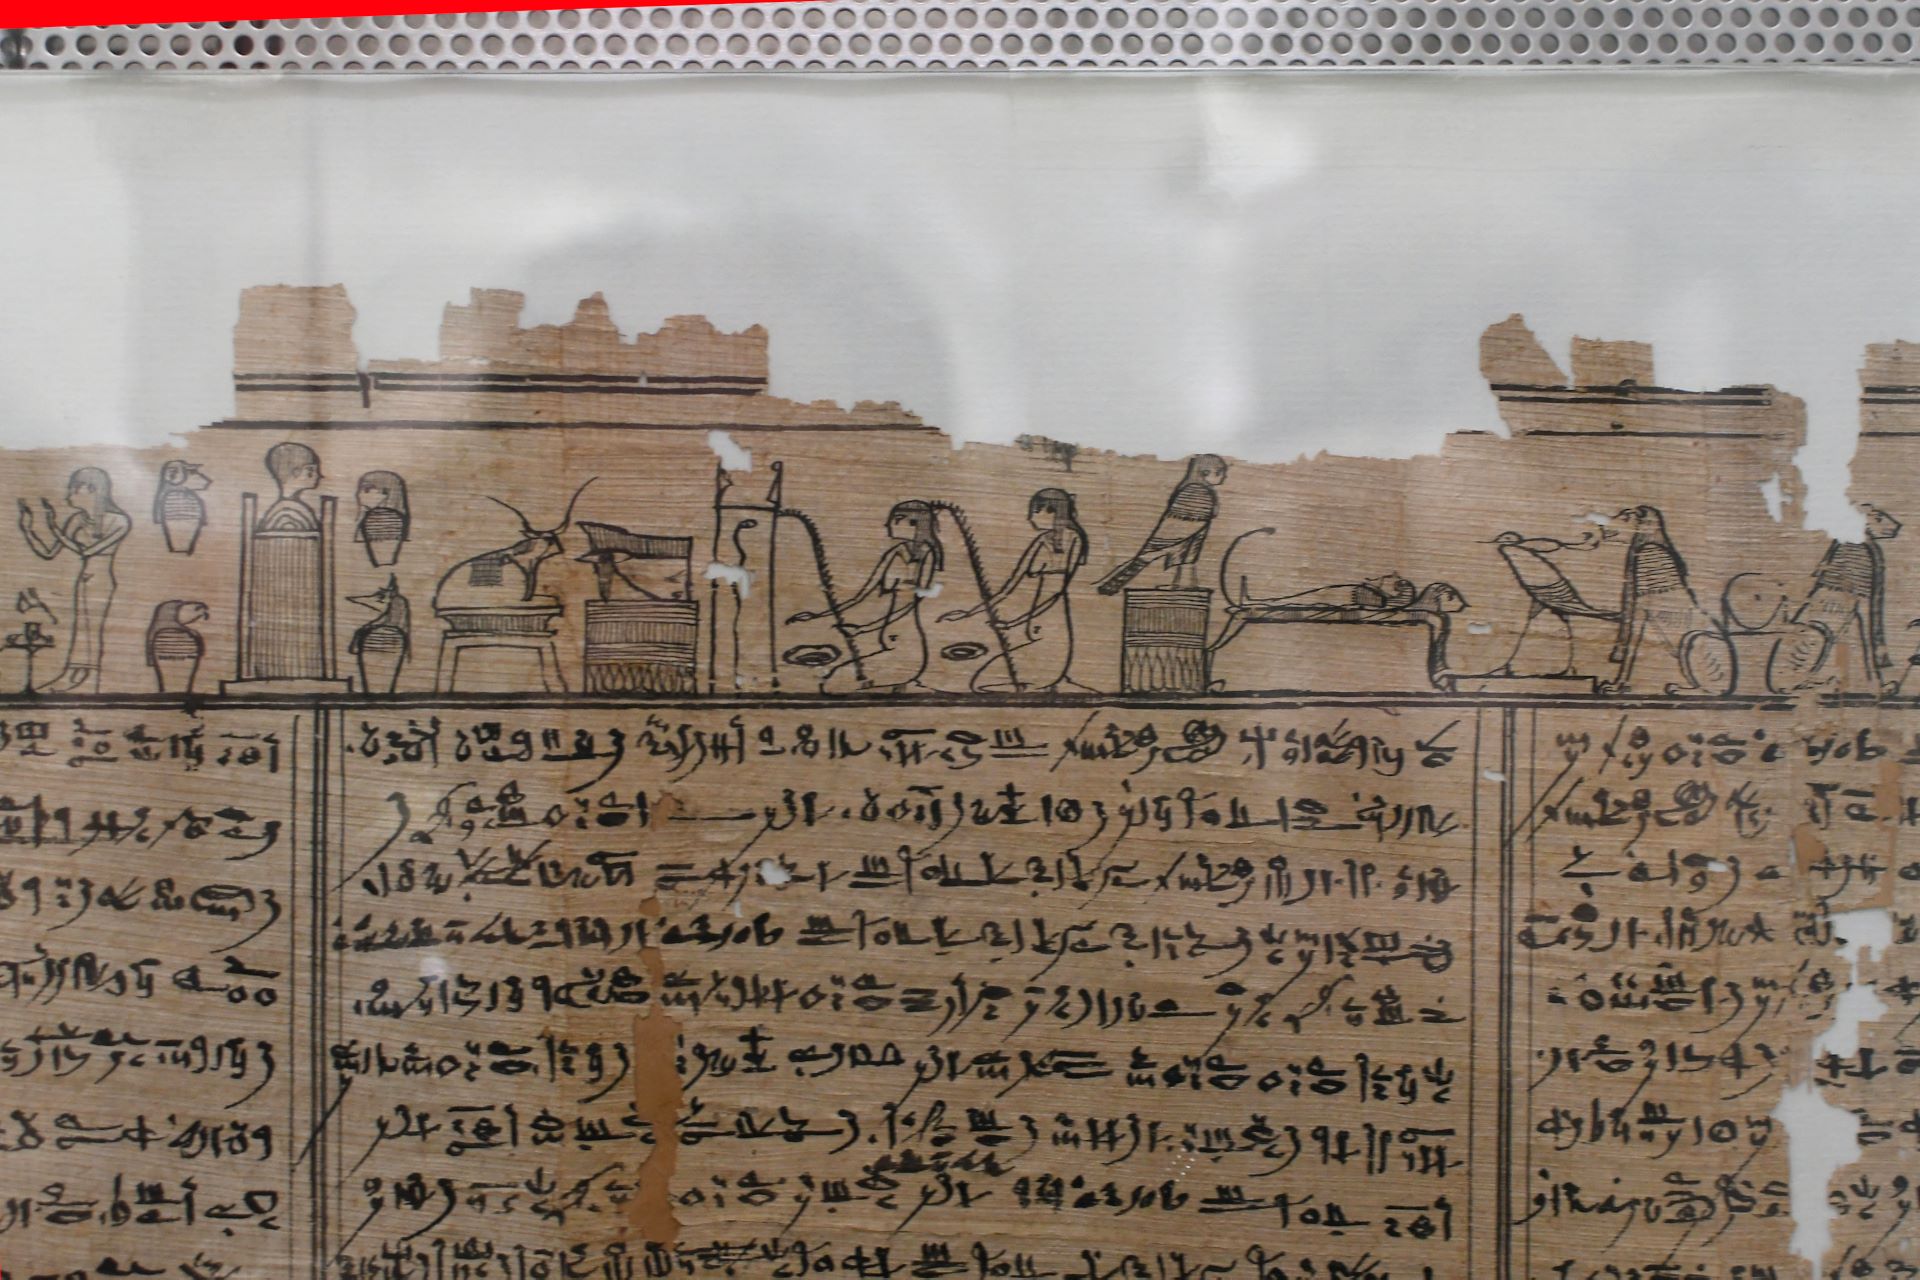 blog:2018-11-17-texte-aus-ferner-zeit:2018-11-17-wien-papyrusmuseum-063b.jpg